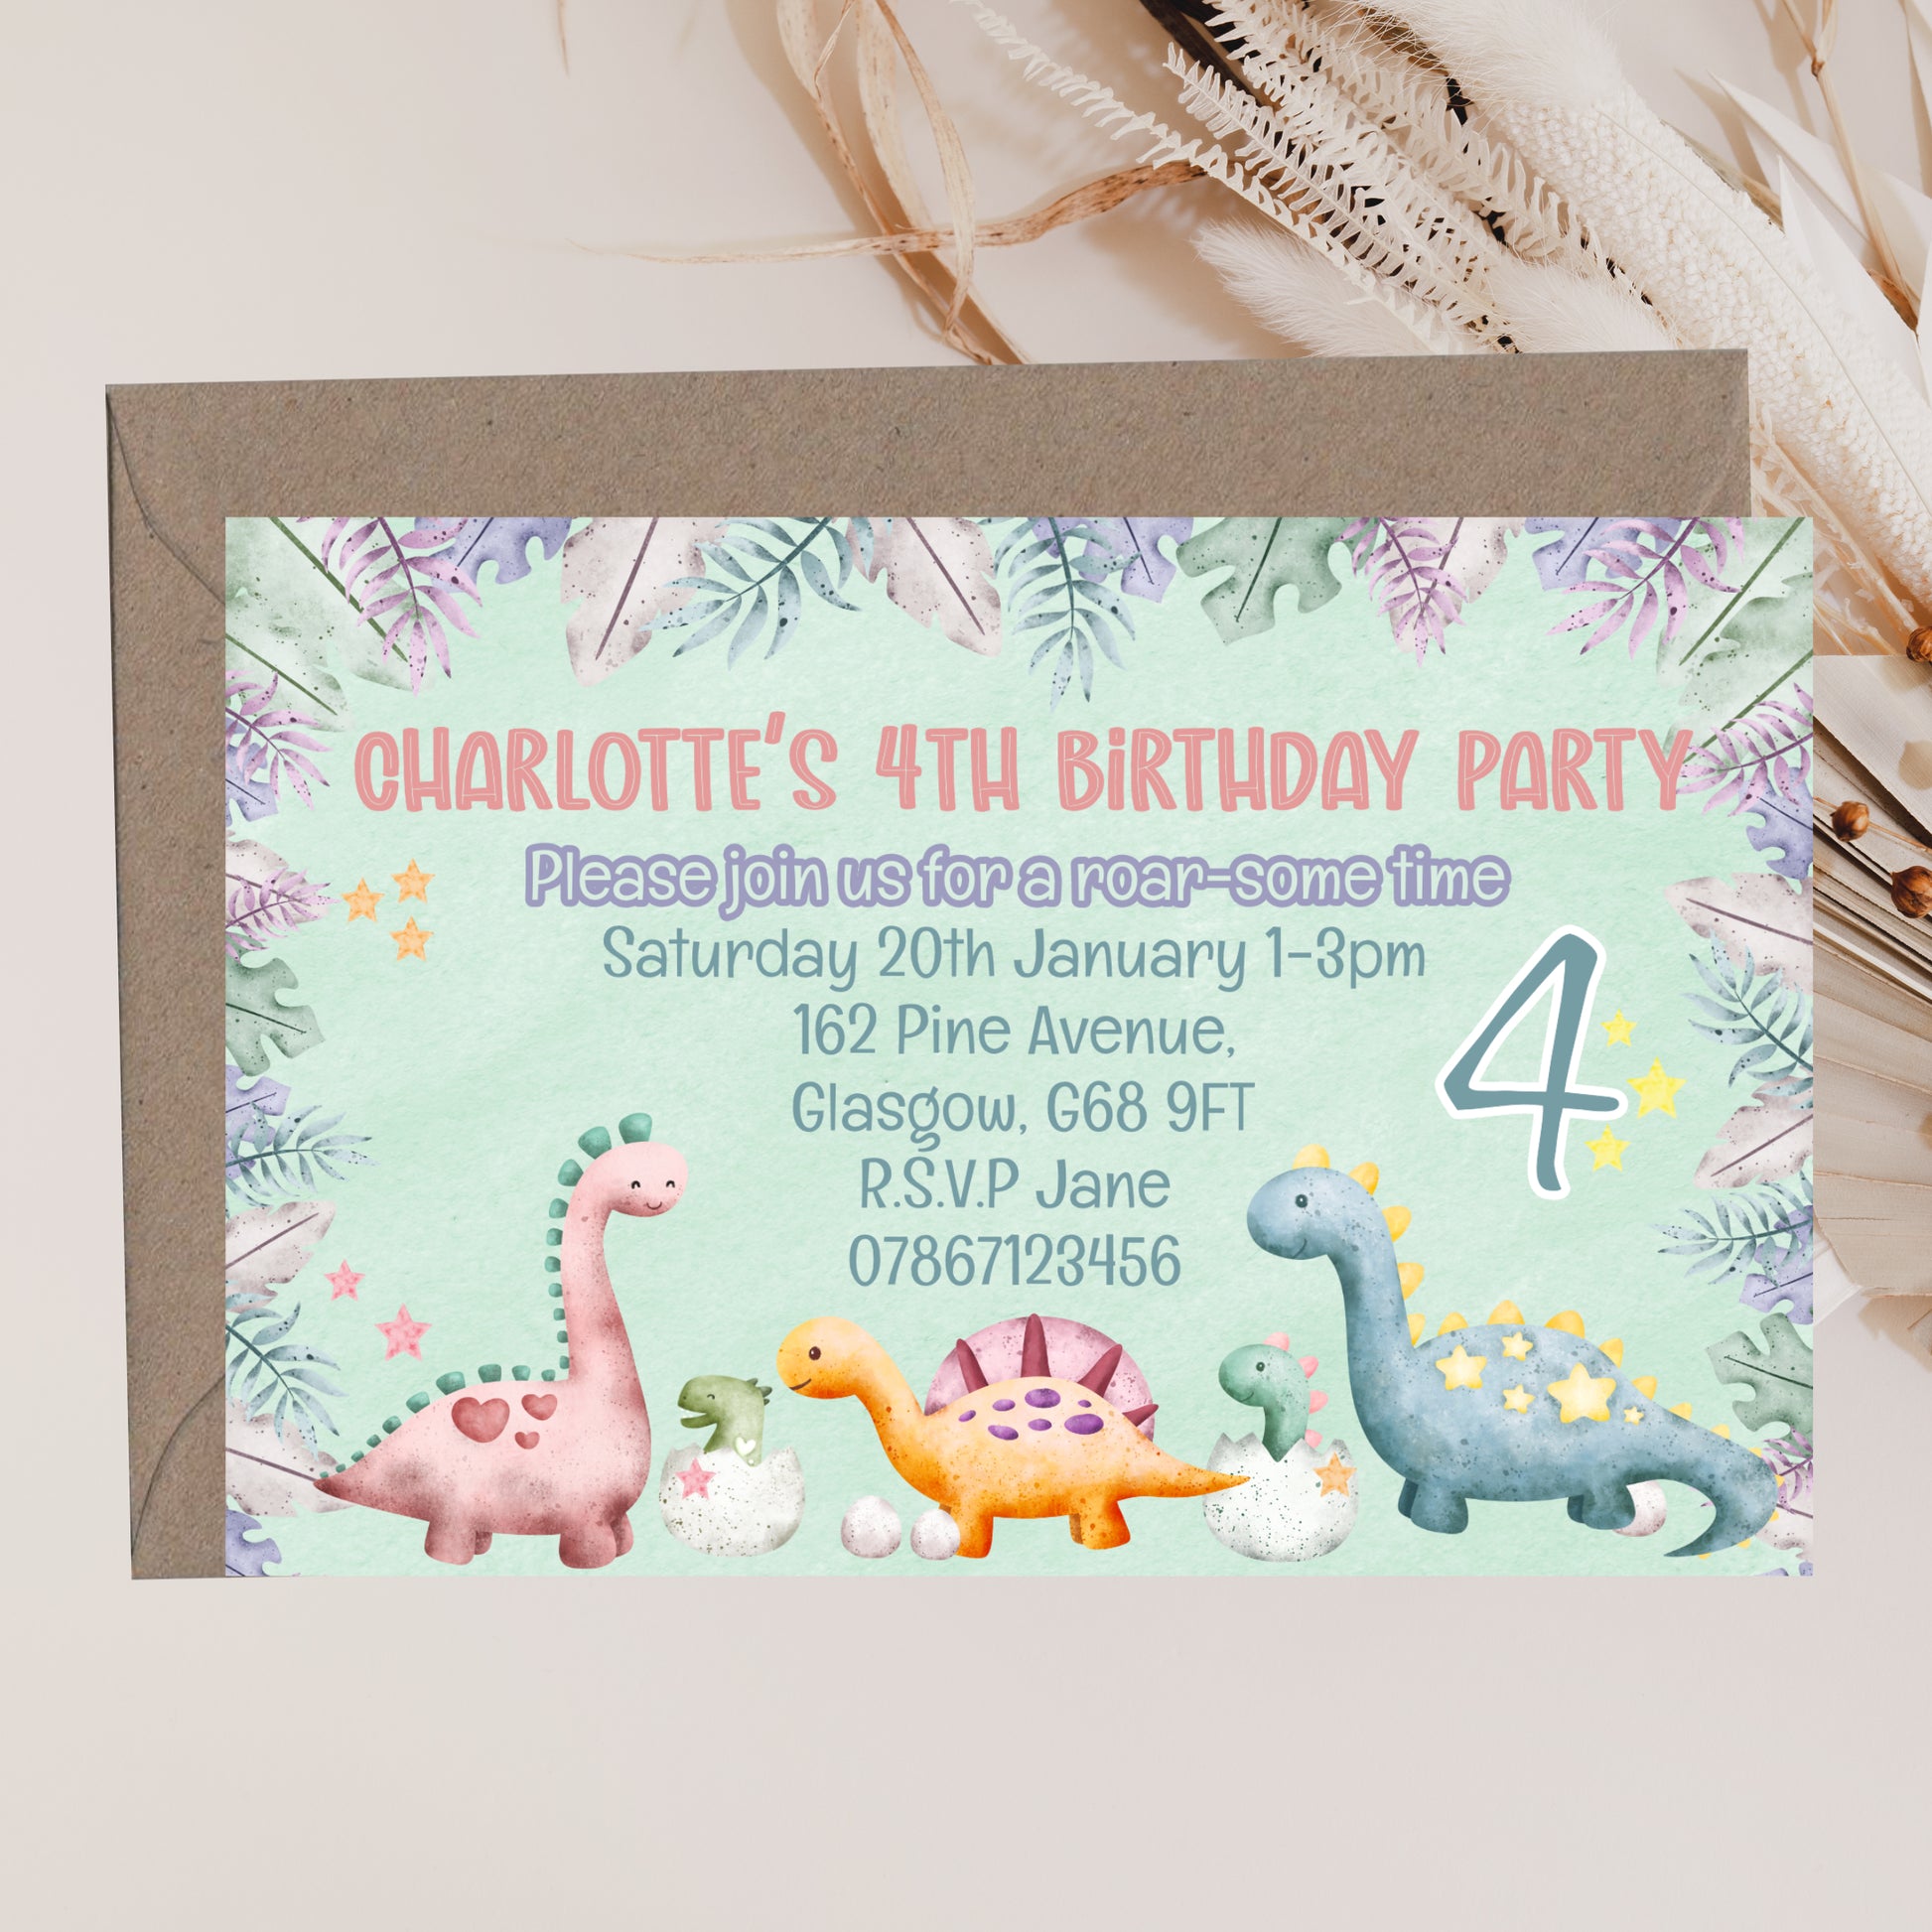 a birthday party card with a dinosaur theme